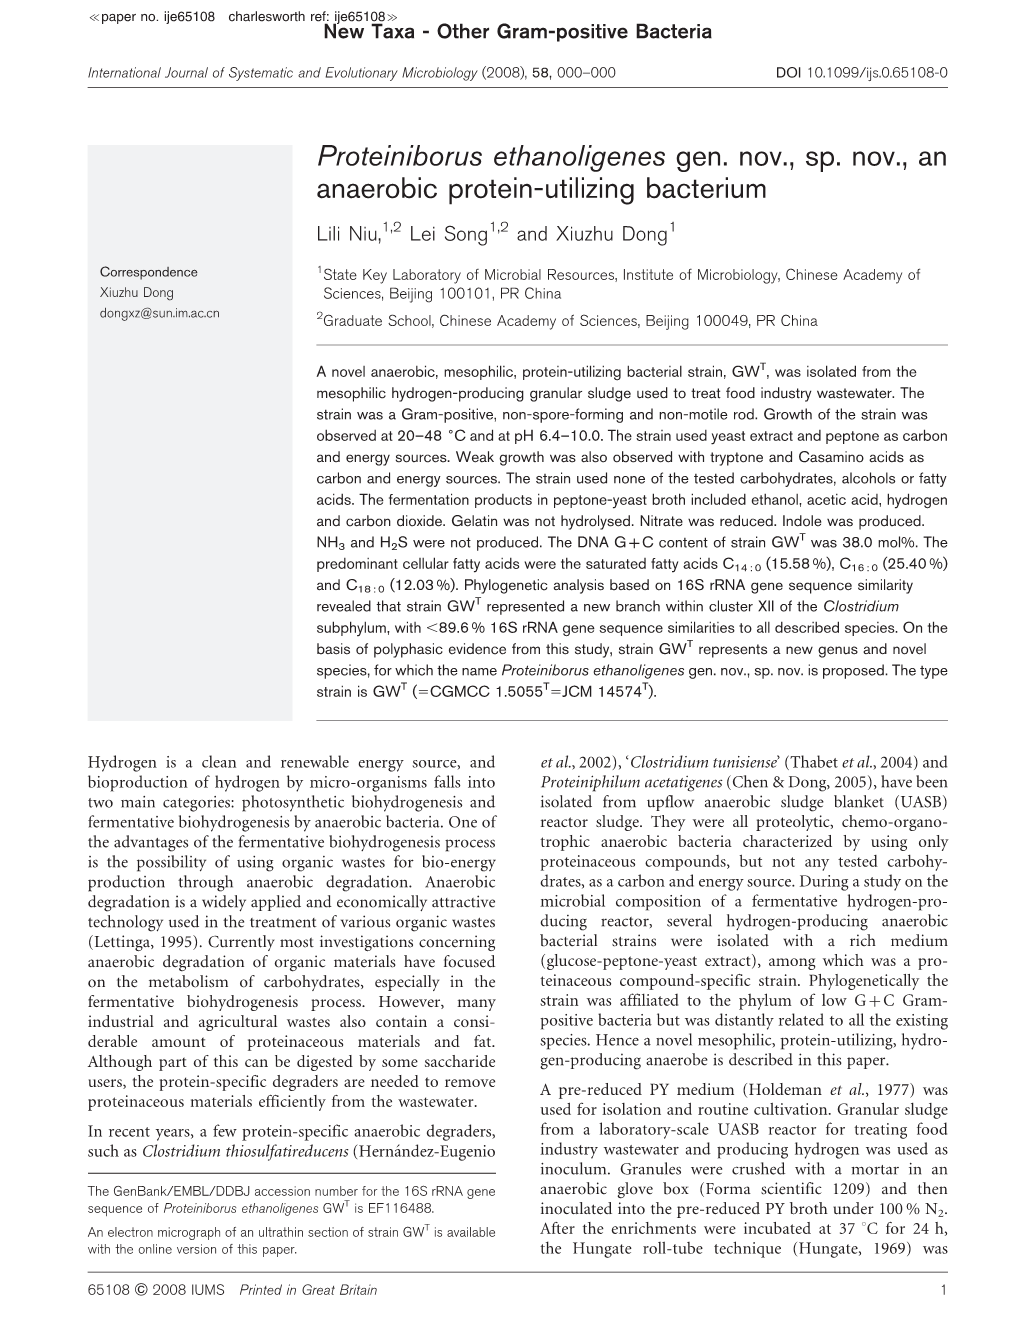 Proteiniborus Ethanoligenes Gen. Nov., Sp. Nov., an Anaerobic Protein-Utilizing Bacterium